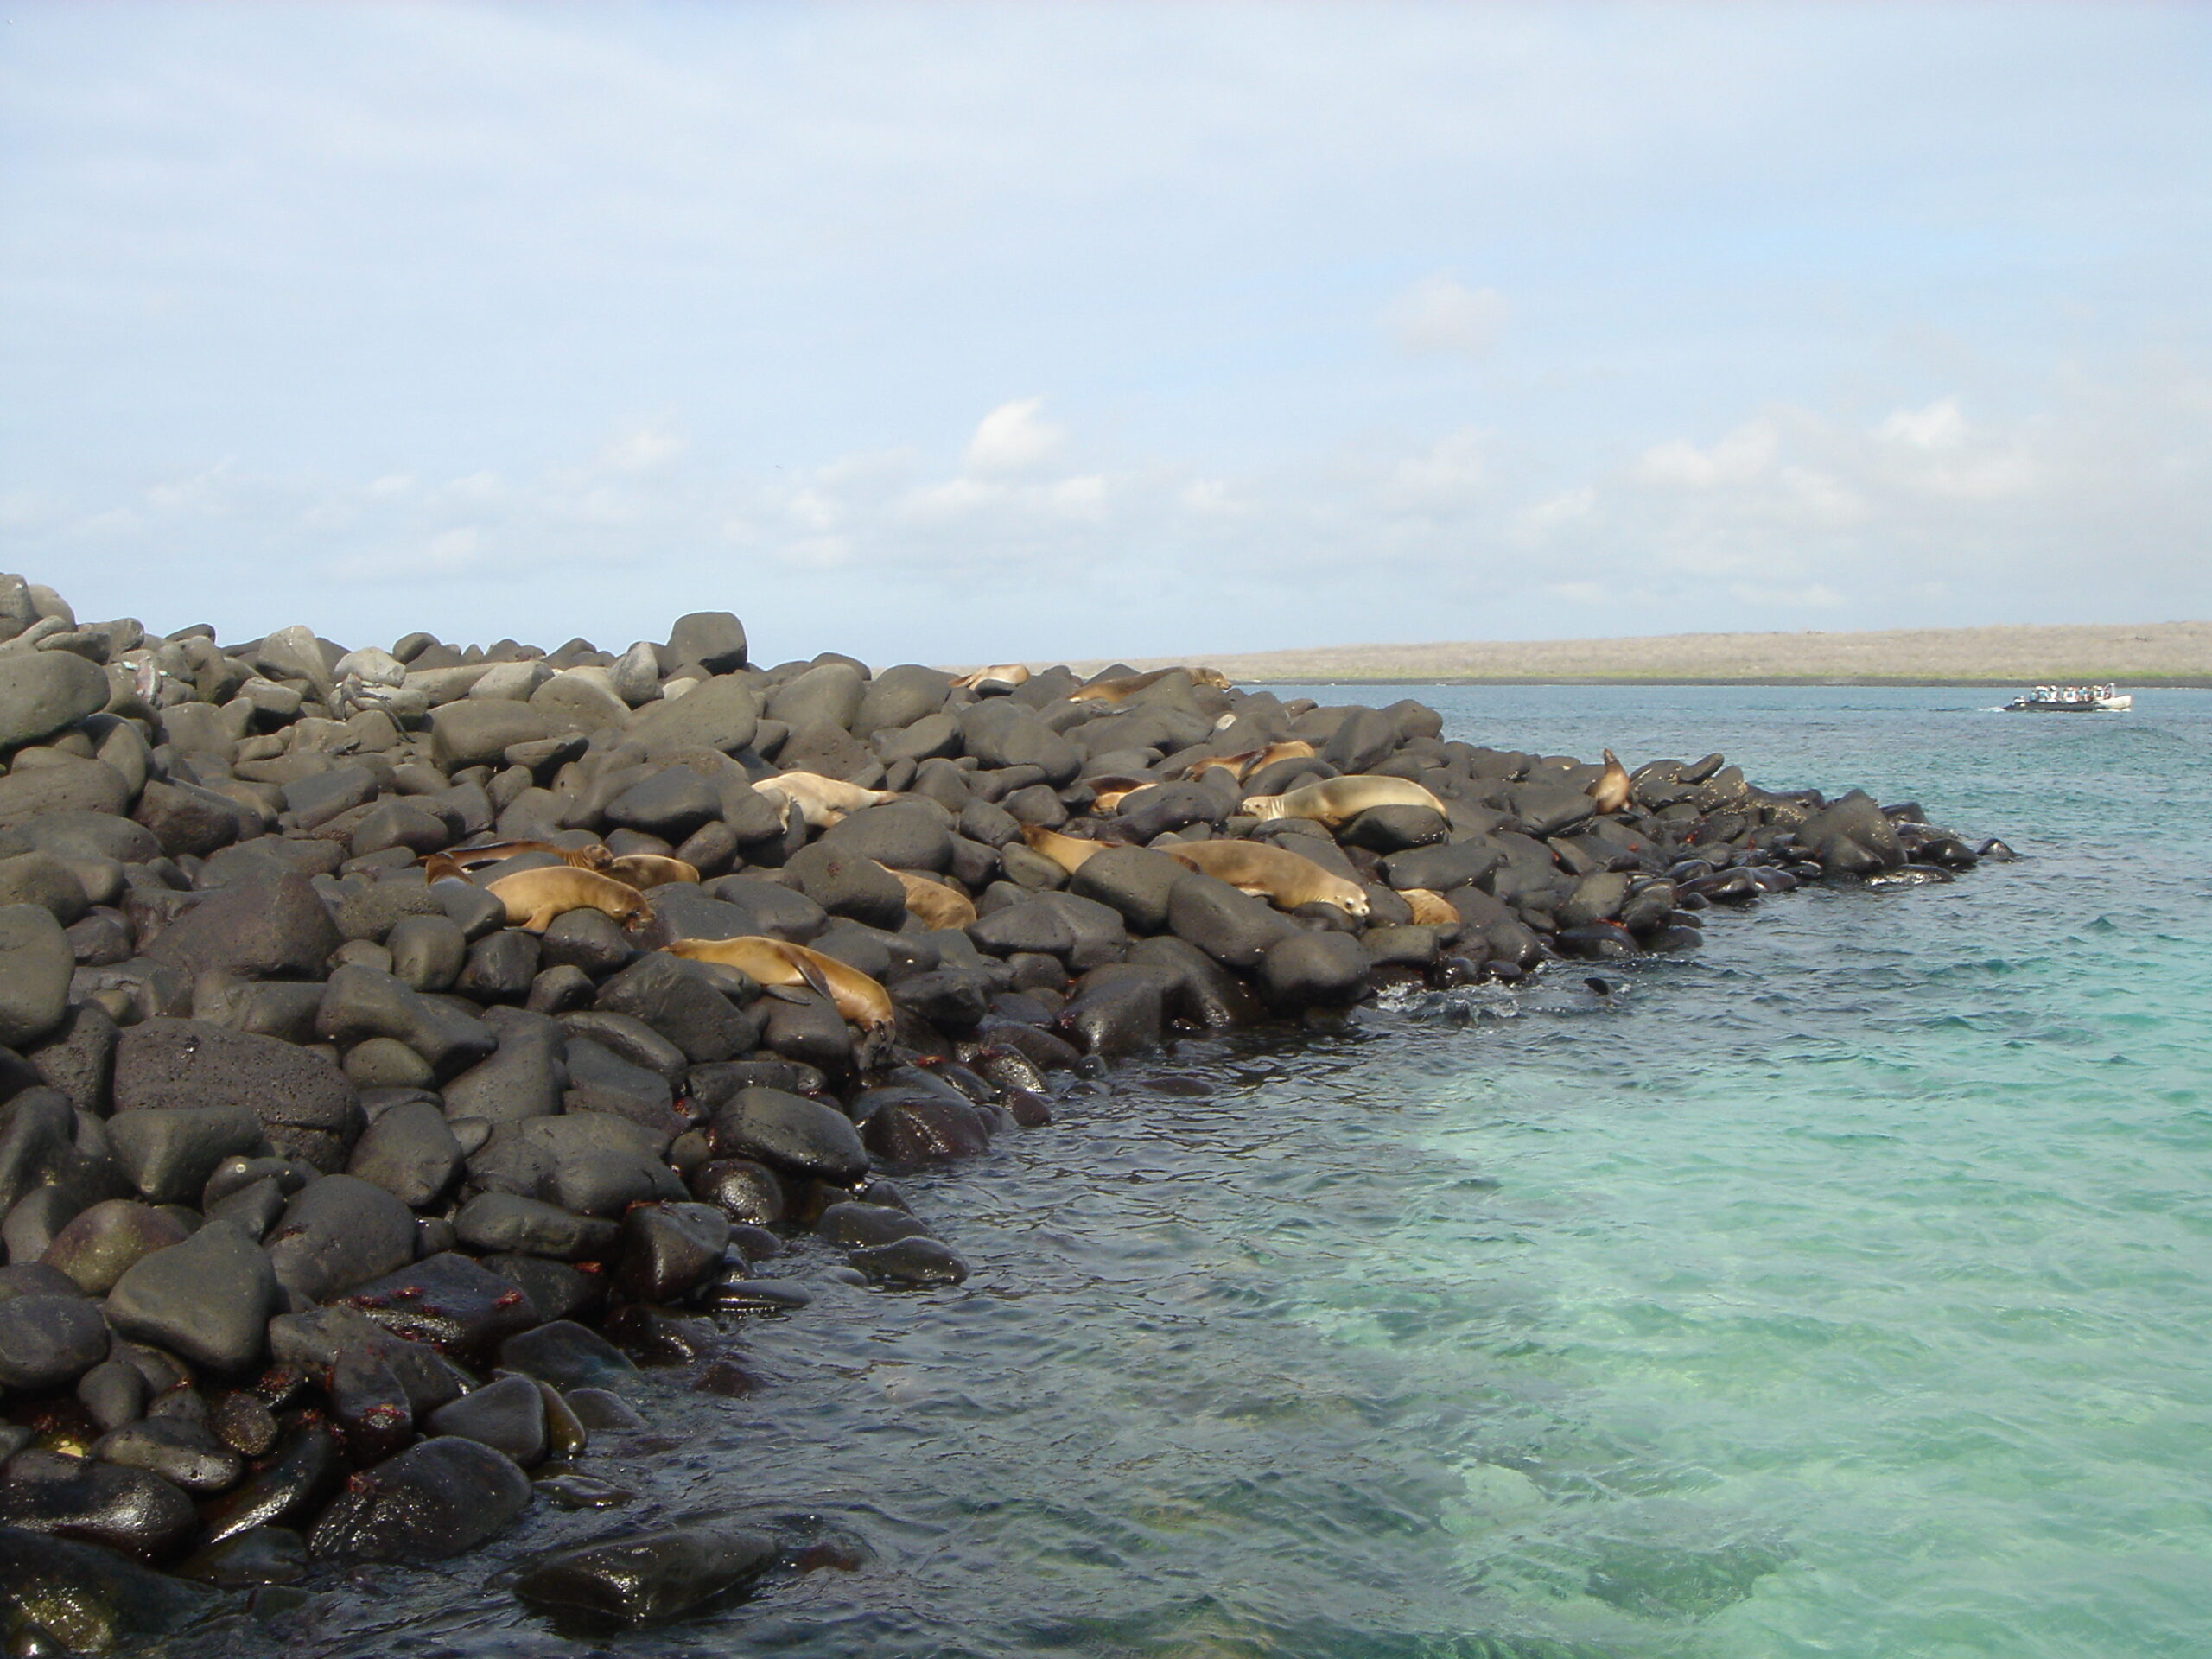 Sea Lions lounging on Espanola Island